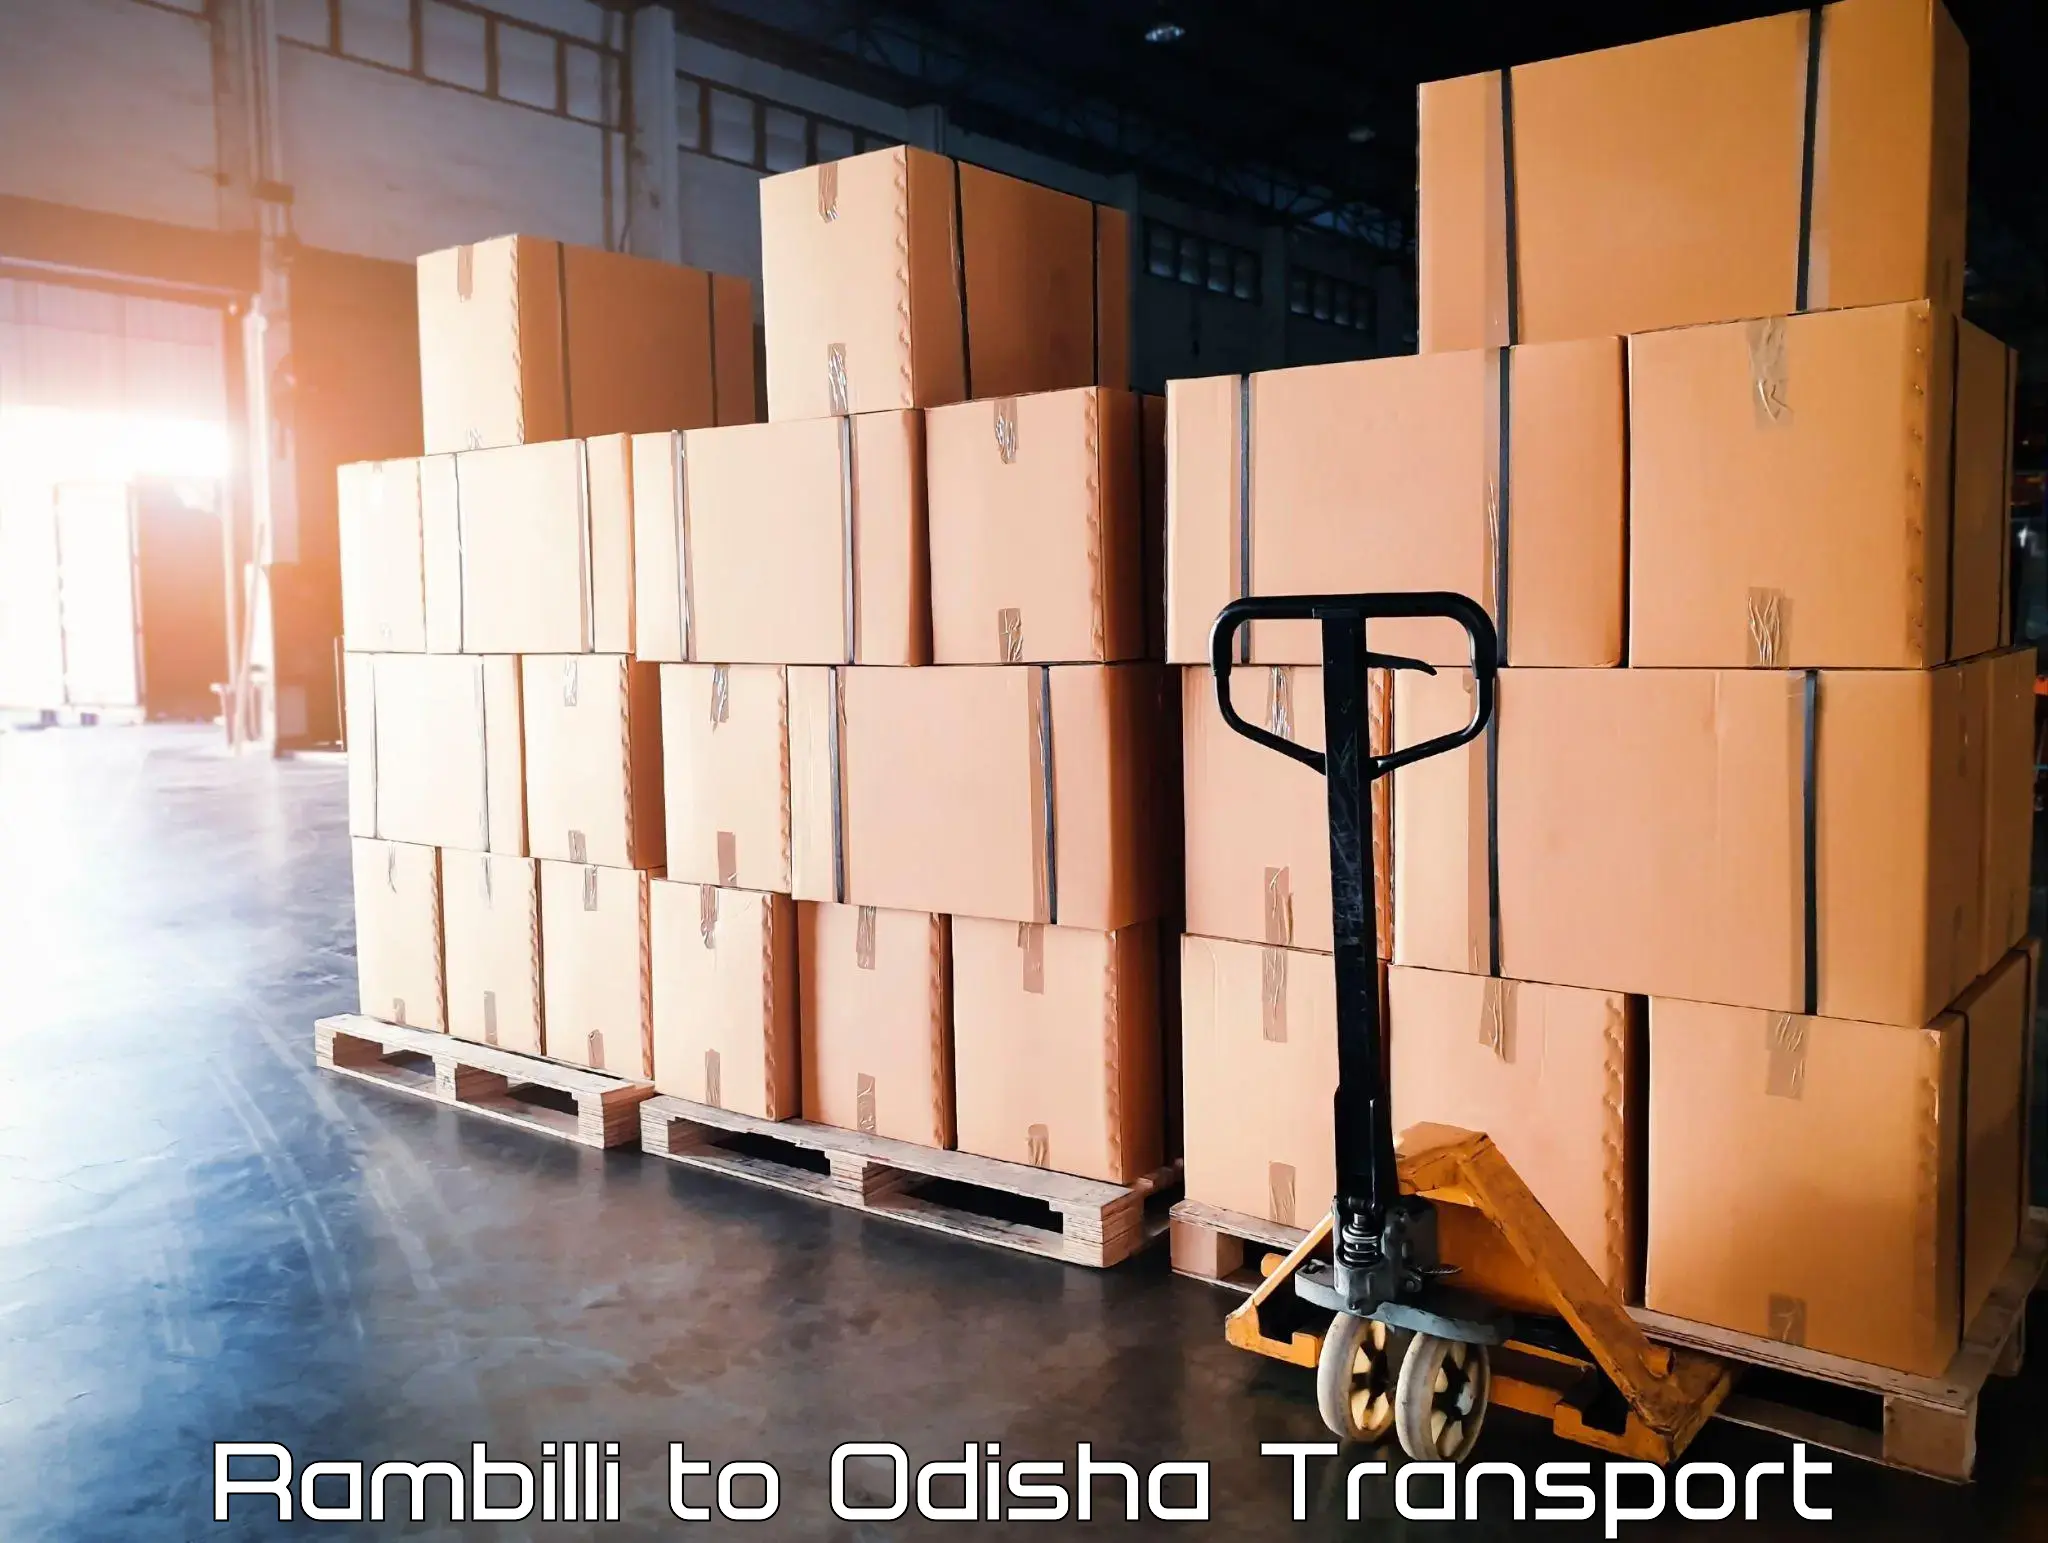 Nearest transport service Rambilli to Chandikhol